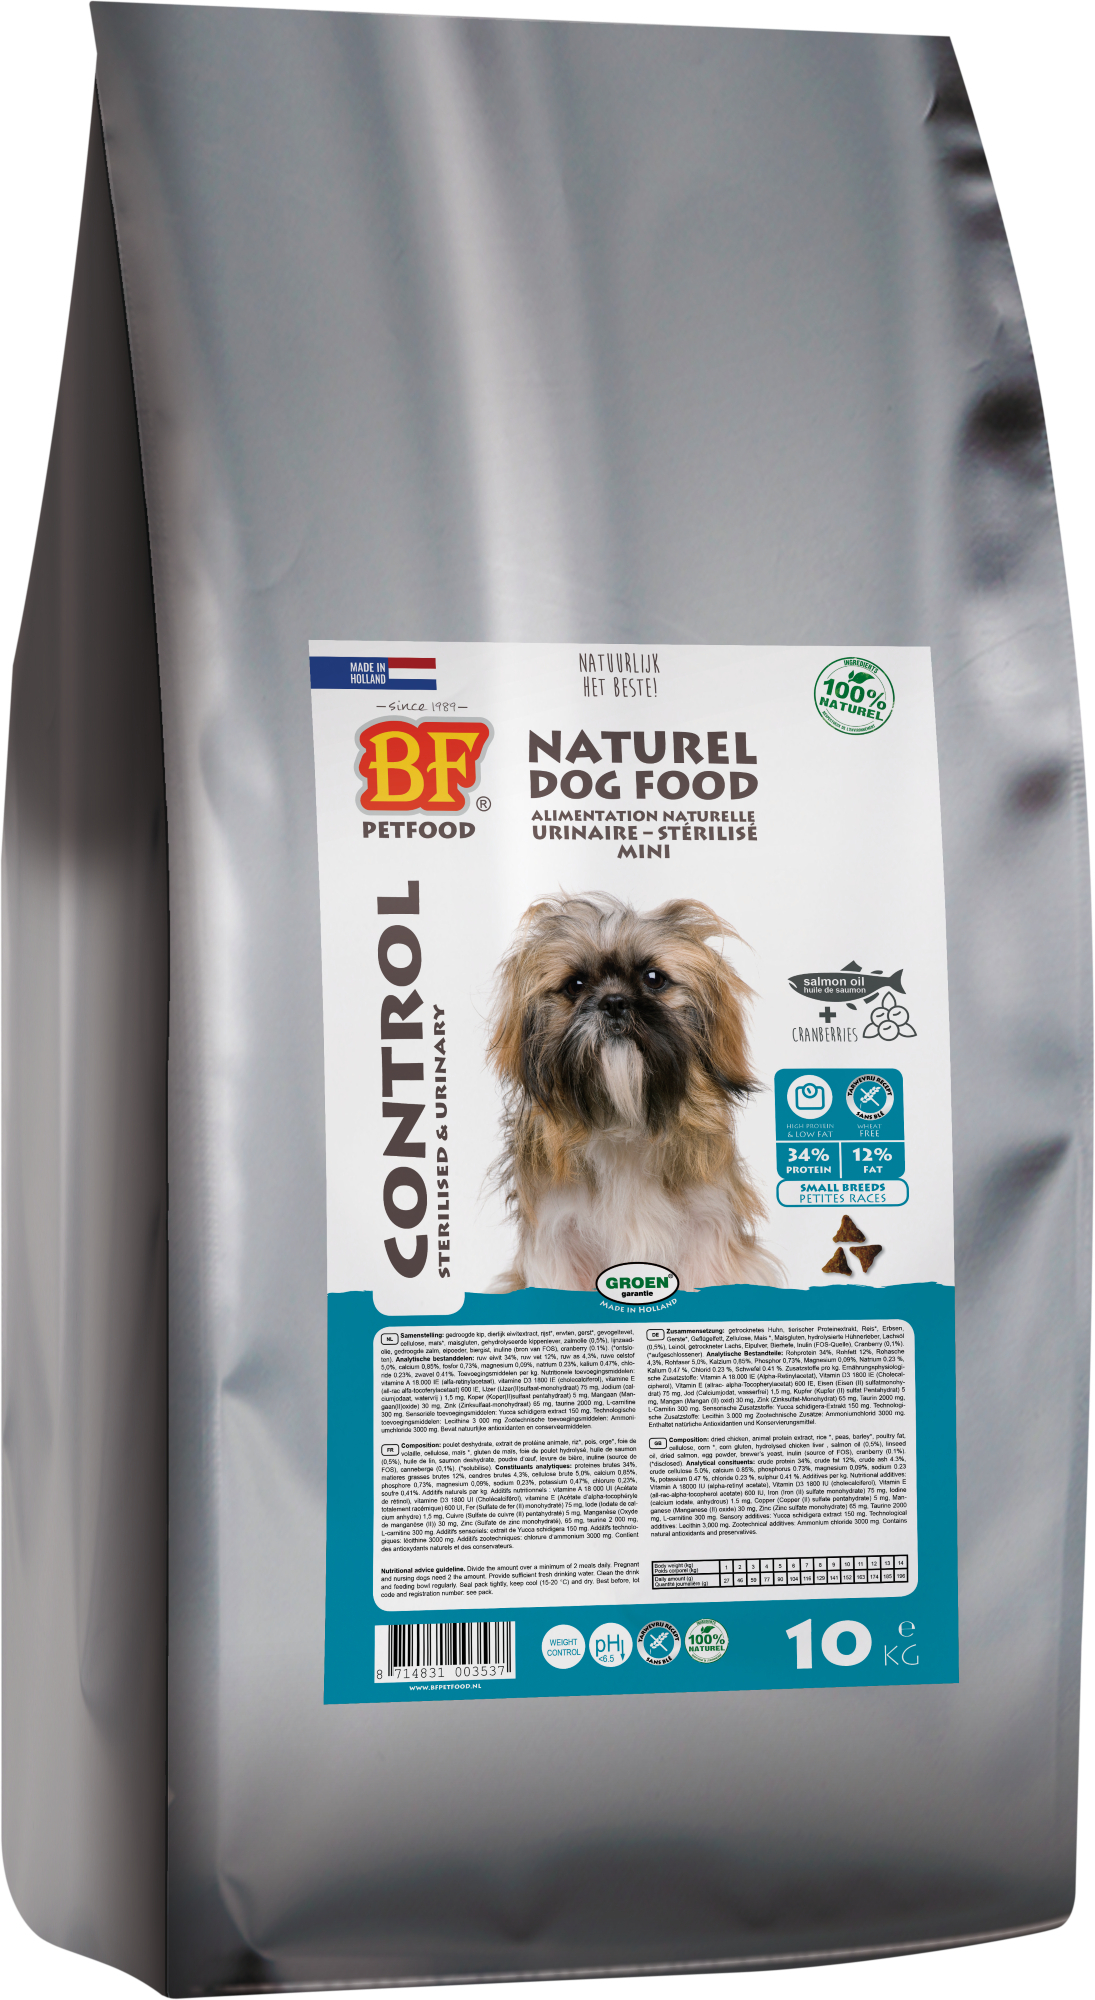 BIOFOOD Mini Control Adult 34/12 für Hunde kleiner Größe mit Übergewicht oder sterilisiert